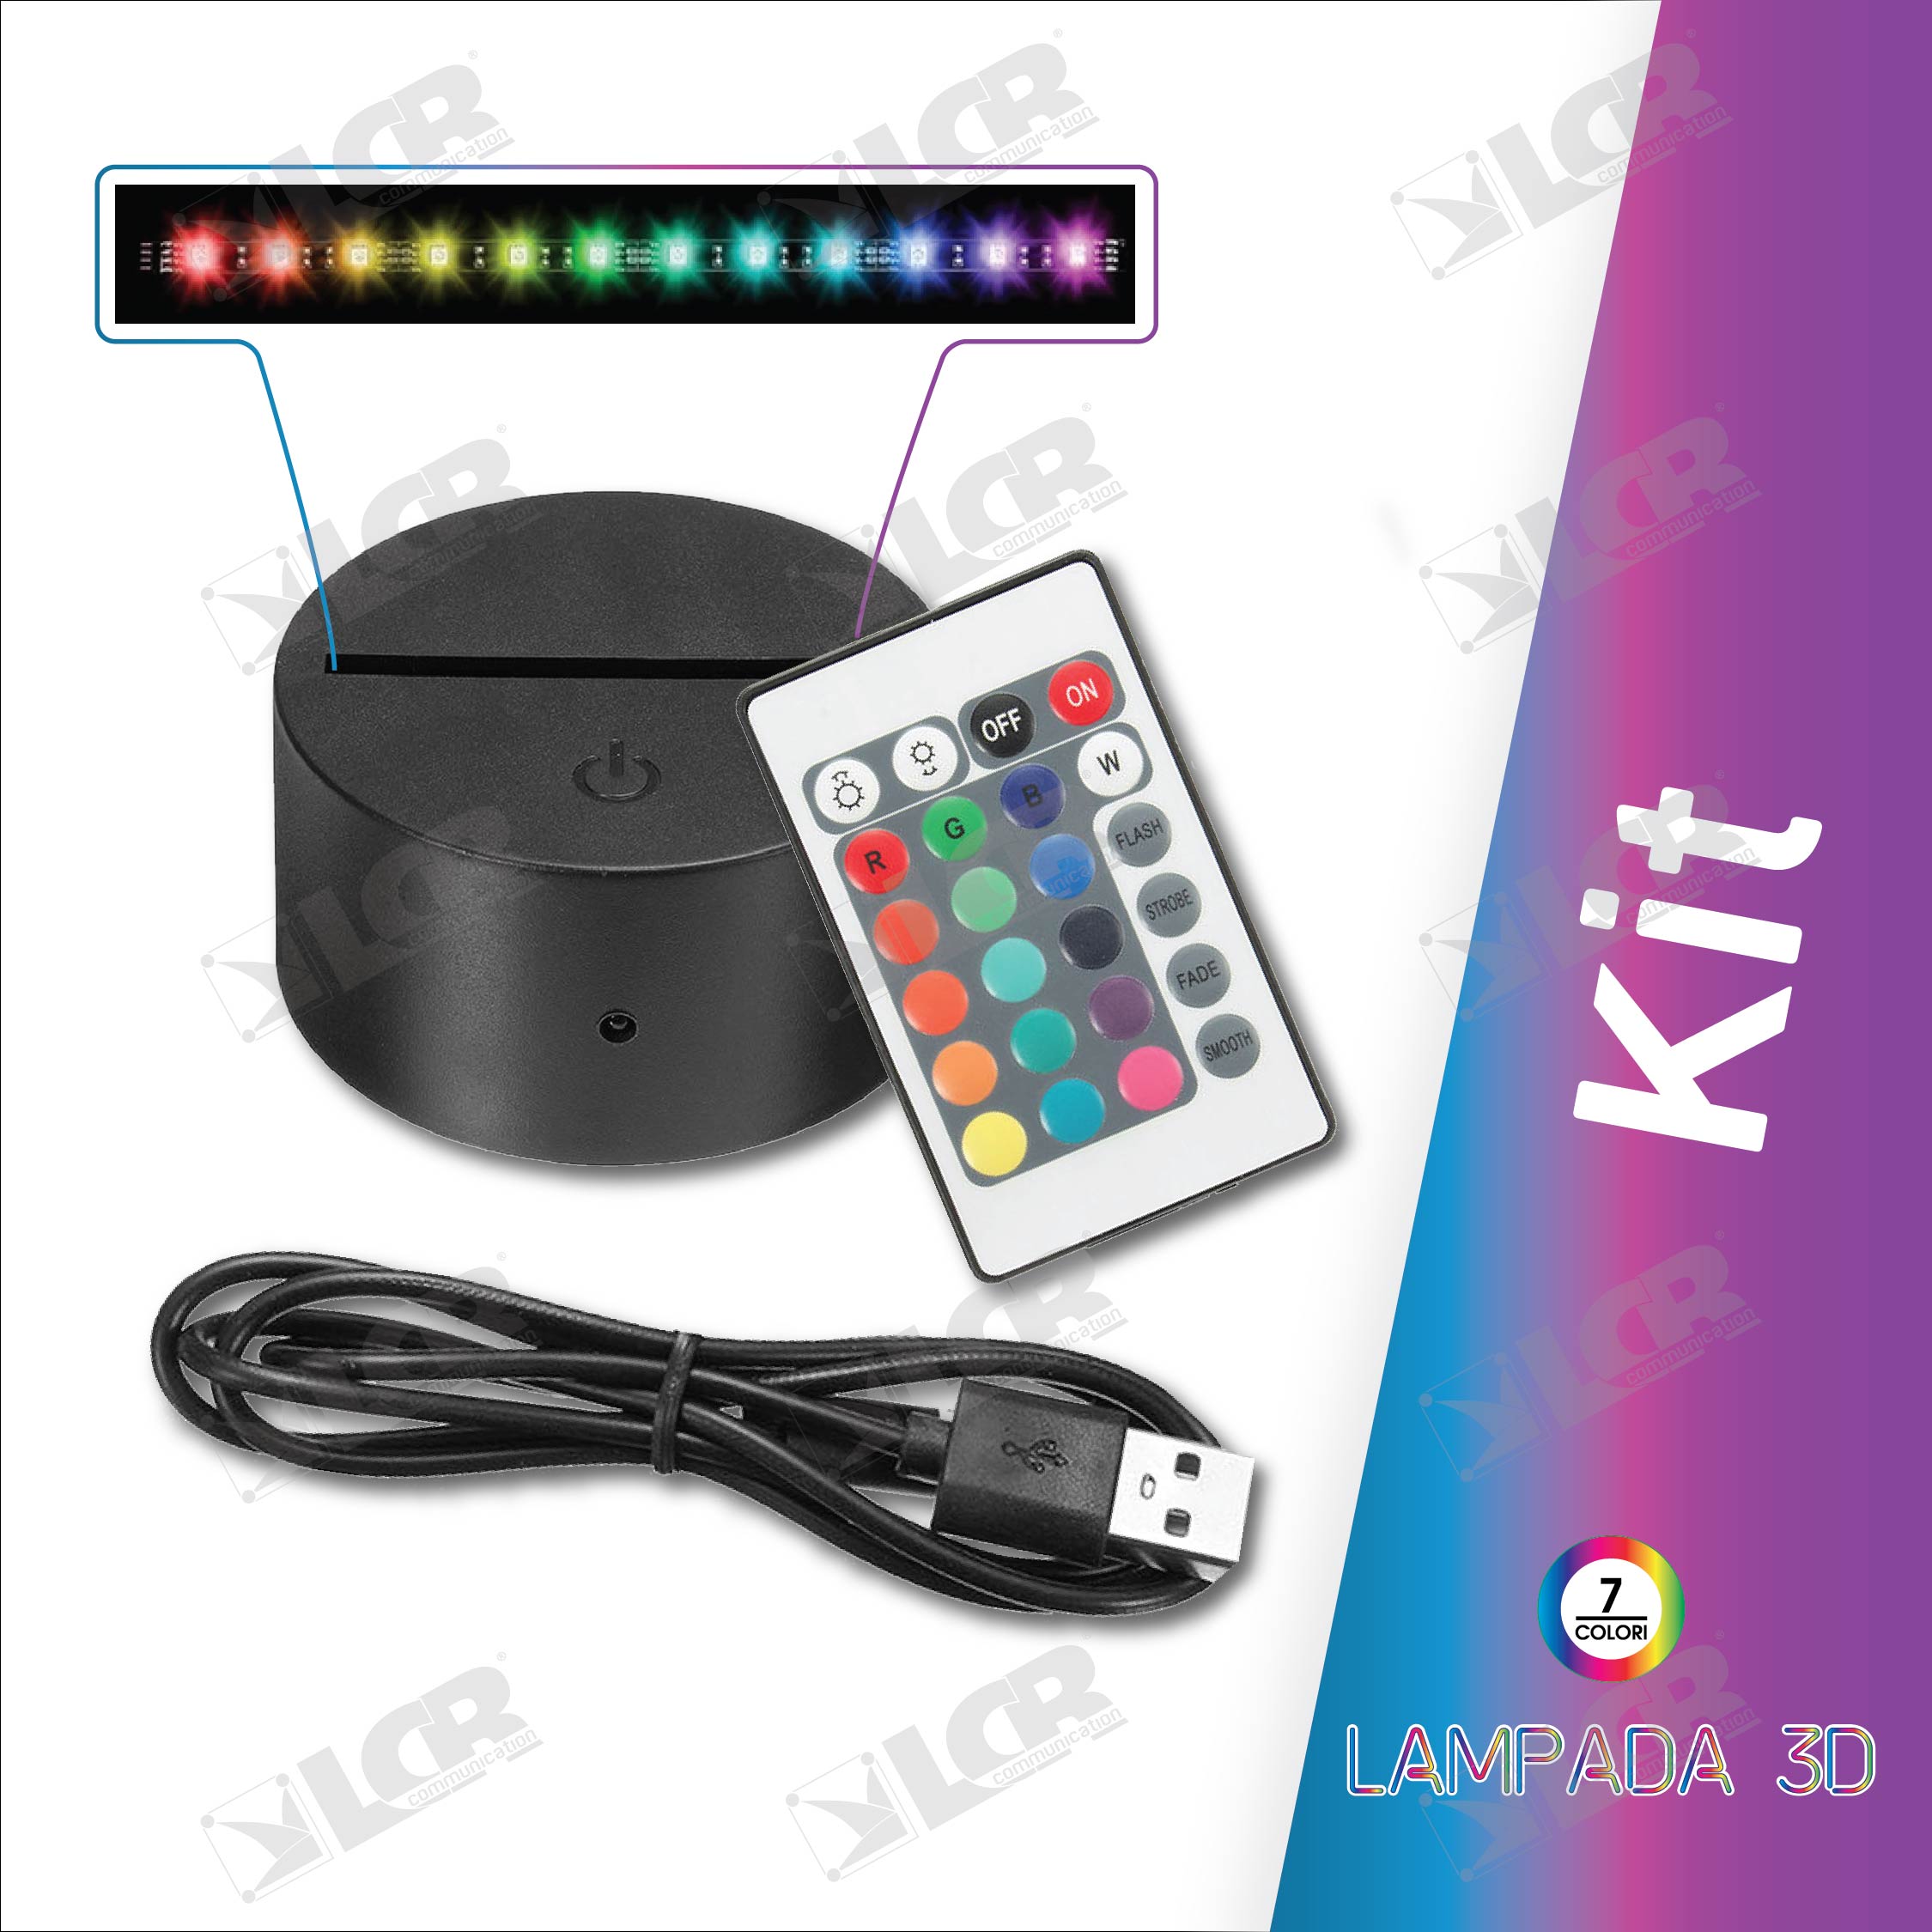 Lampada 3D Mappamondo - prezzo offerta 